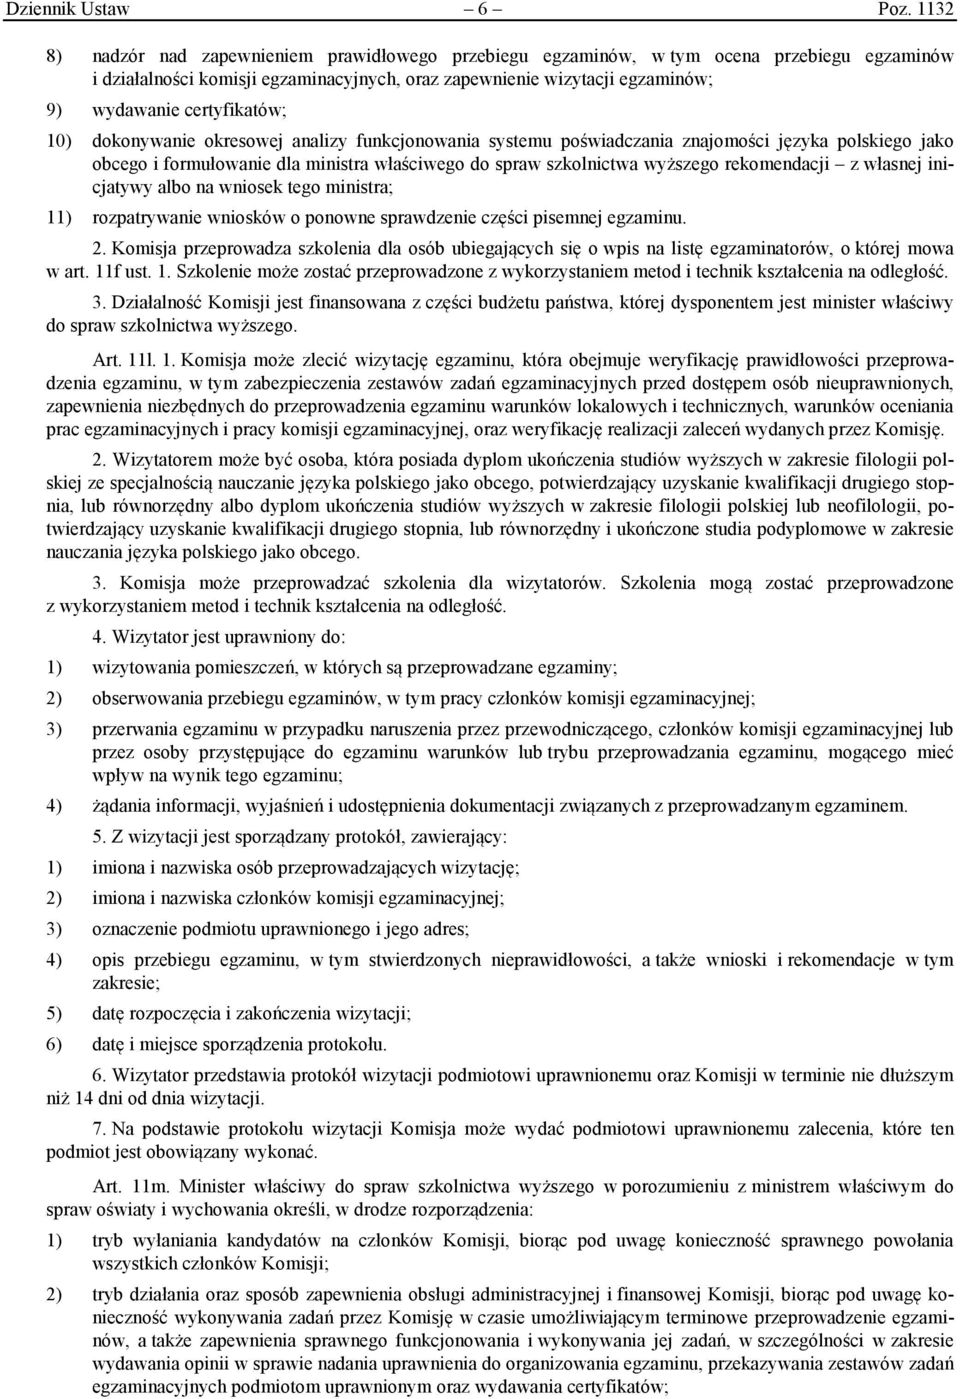 certyfikatów; 10) dokonywanie okresowej analizy funkcjonowania systemu poświadczania znajomości języka polskiego jako obcego i formułowanie dla ministra właściwego do spraw szkolnictwa wyższego